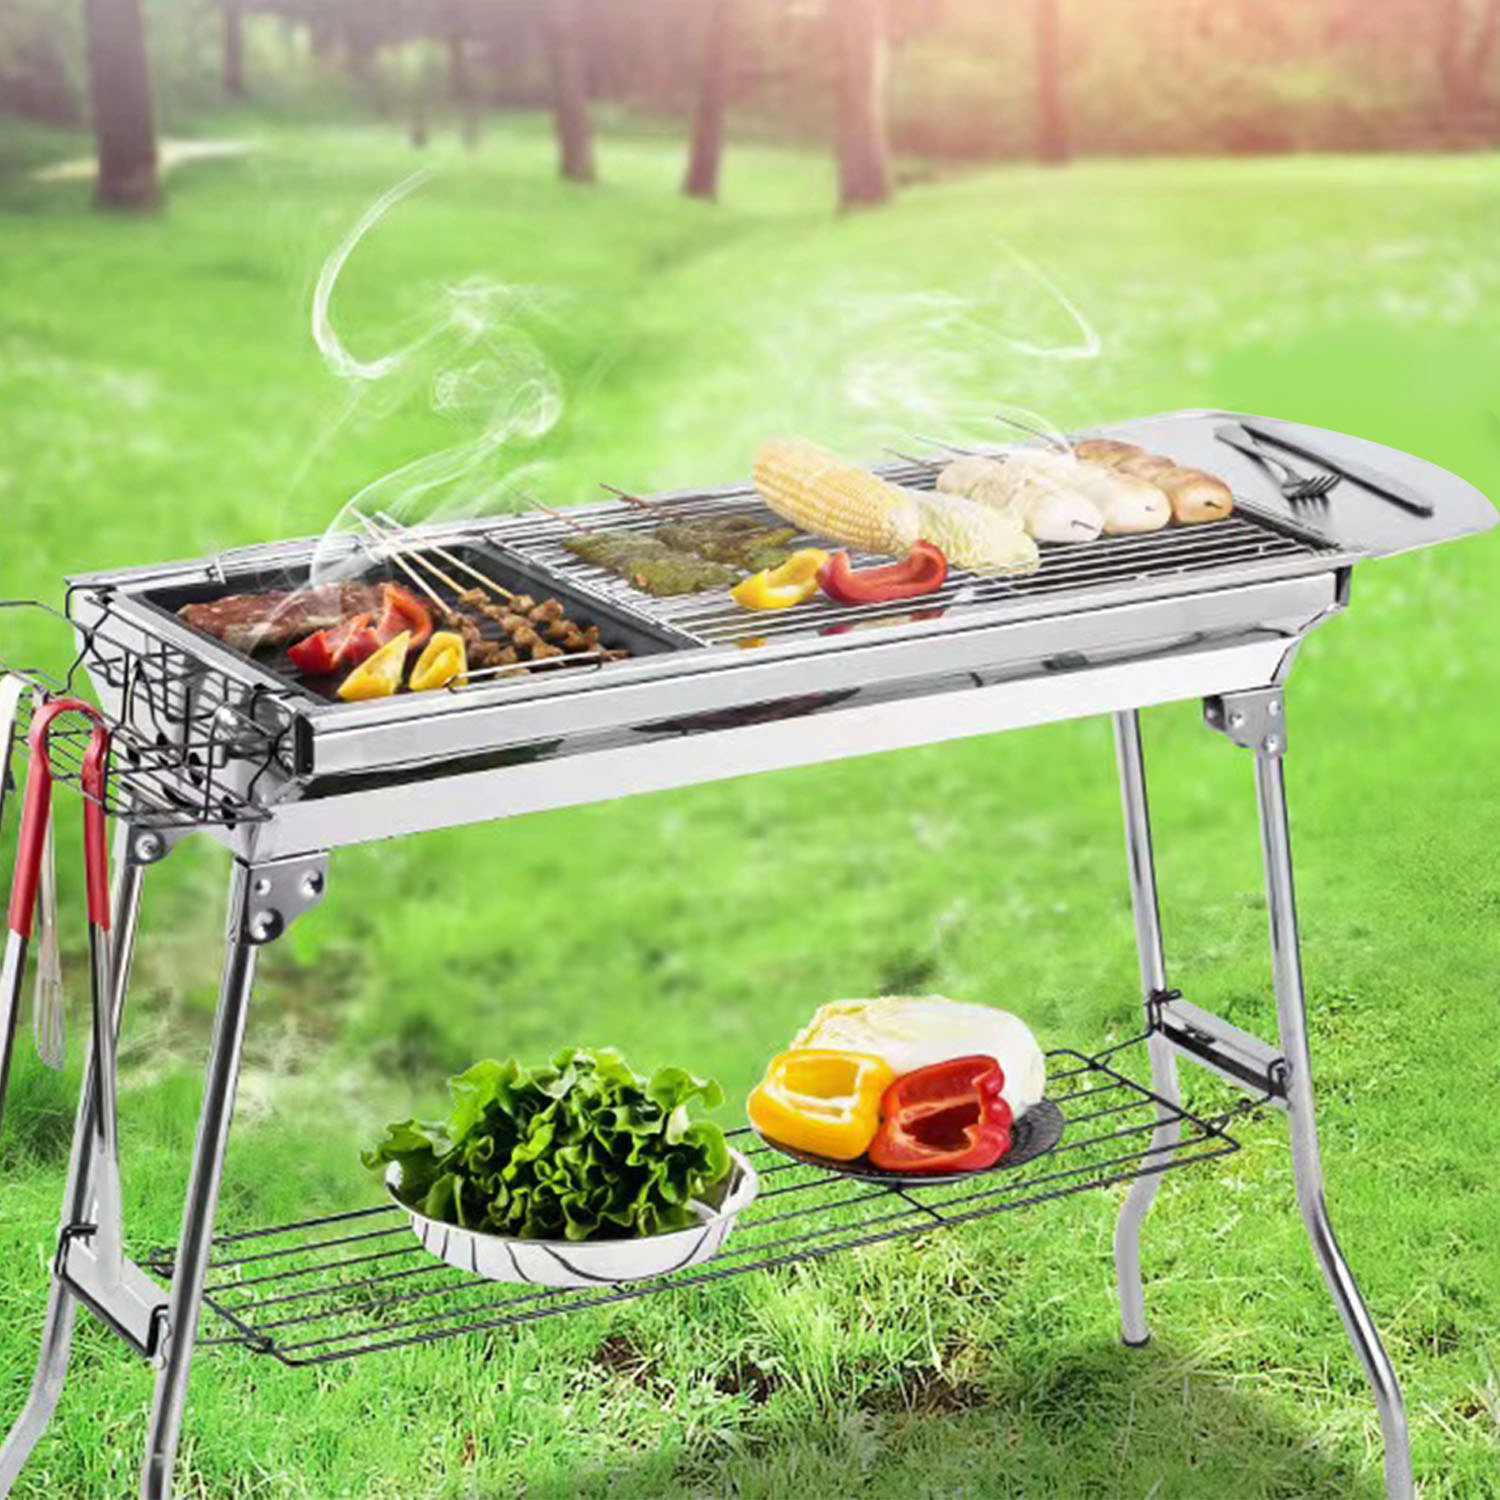 iMounTek 13.5' Foldable BBQ Portable Charcoal Grill & Reviews | Wayfair